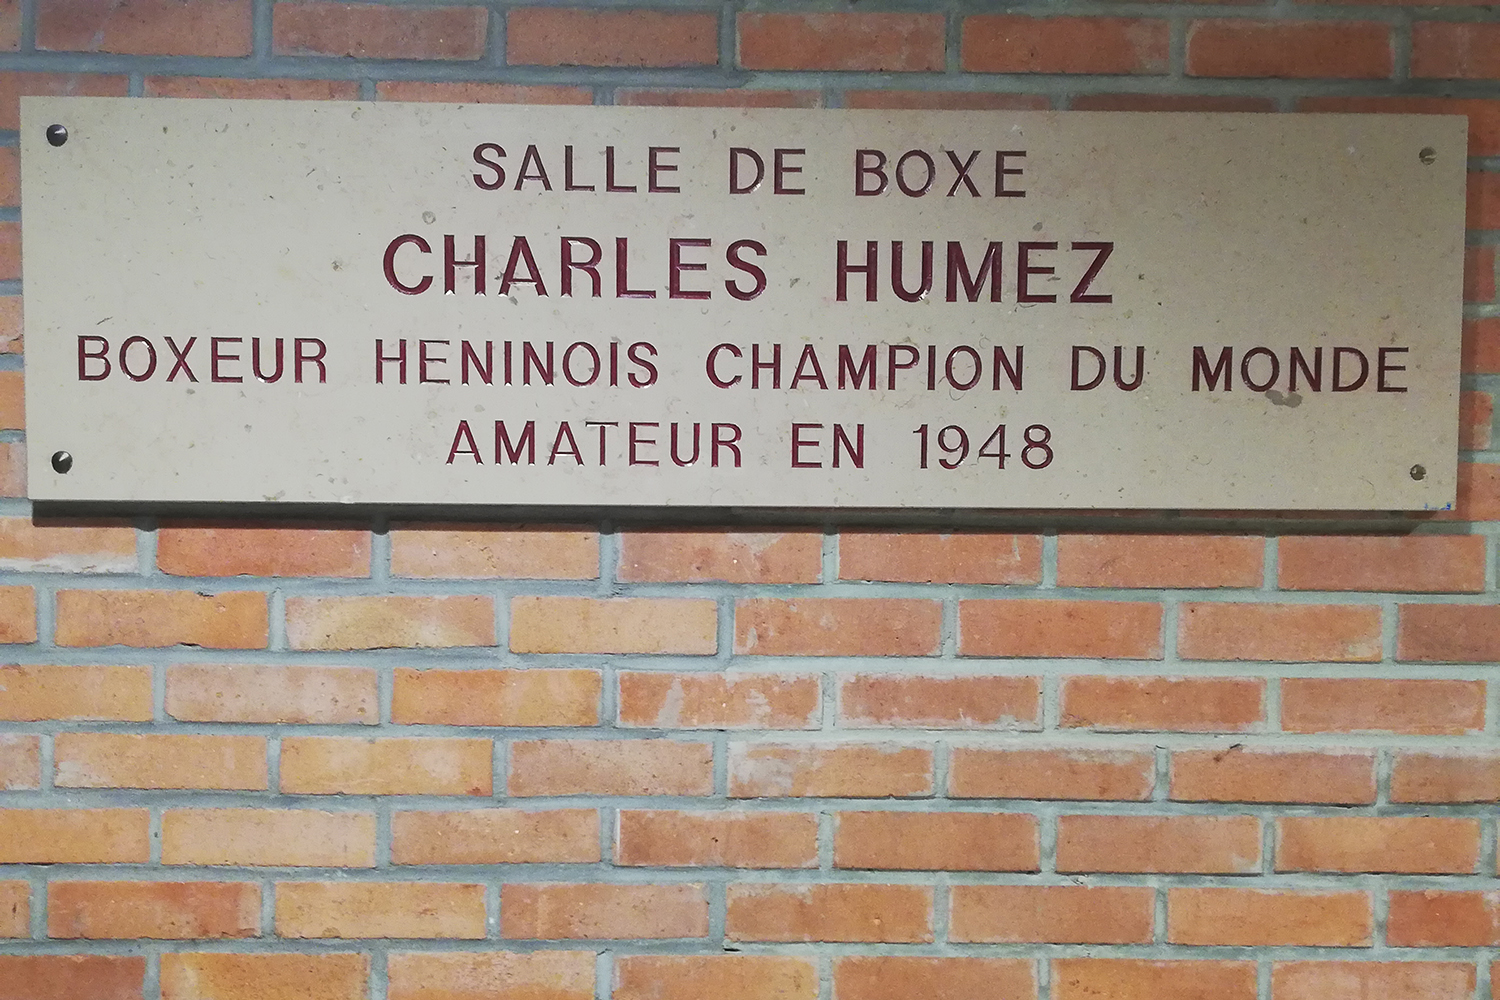 La salle de boxe porte le nom d’un autre champion héninois, Charles HUMEZ, champion du monde amateur en 1948.  